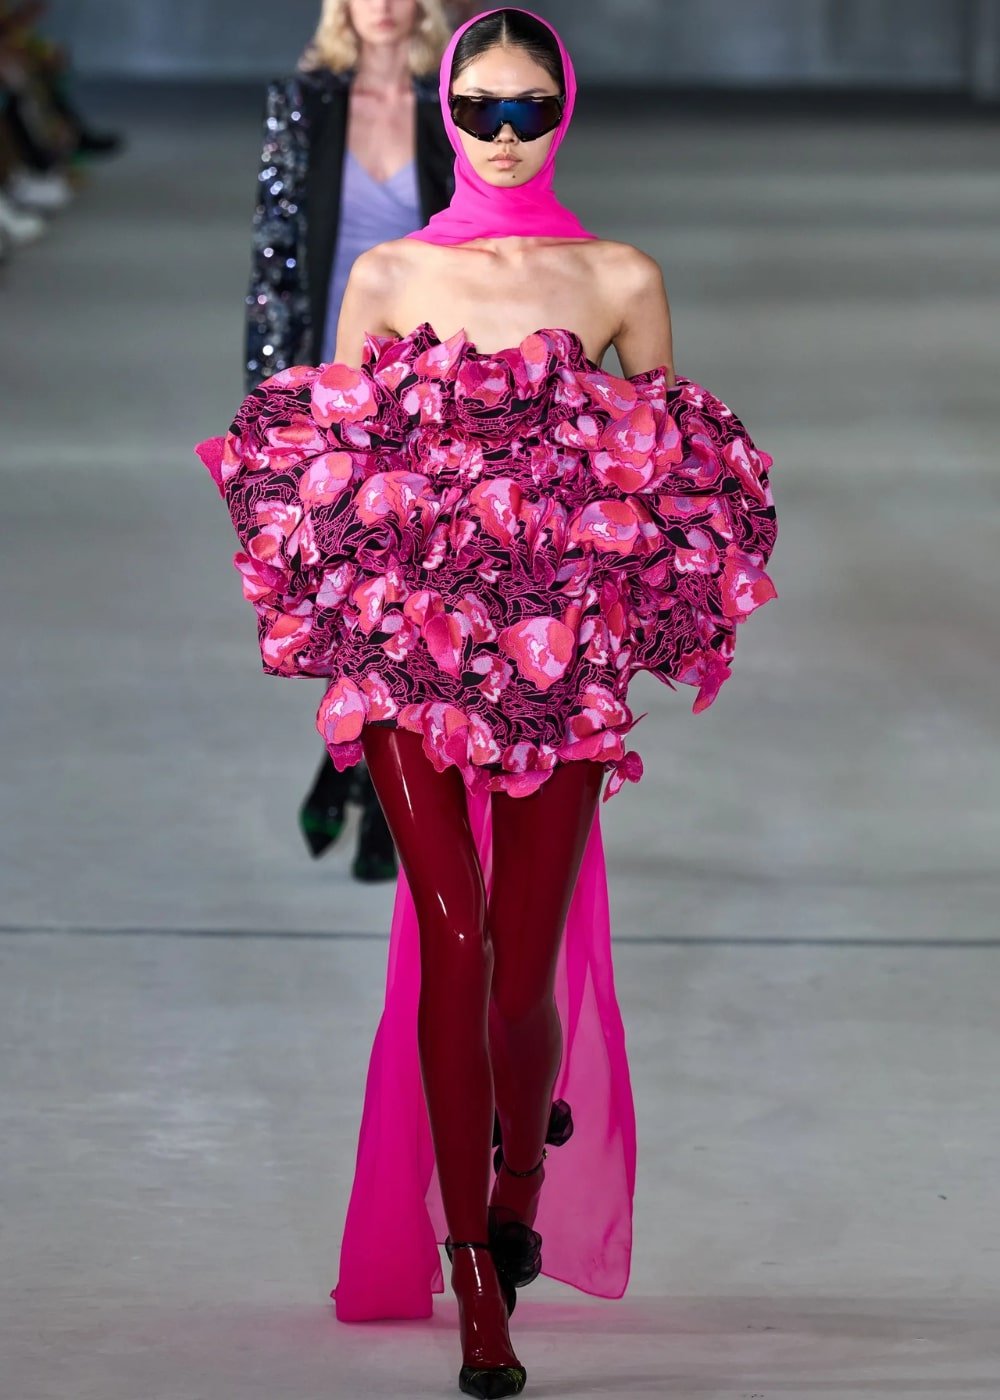 Prabal Gurung - legging de verniz vermelha, vestido rosa e óculos - semana de moda de Nova York - Primavera - modelo andando pela passarela - https://stealthelook.com.br